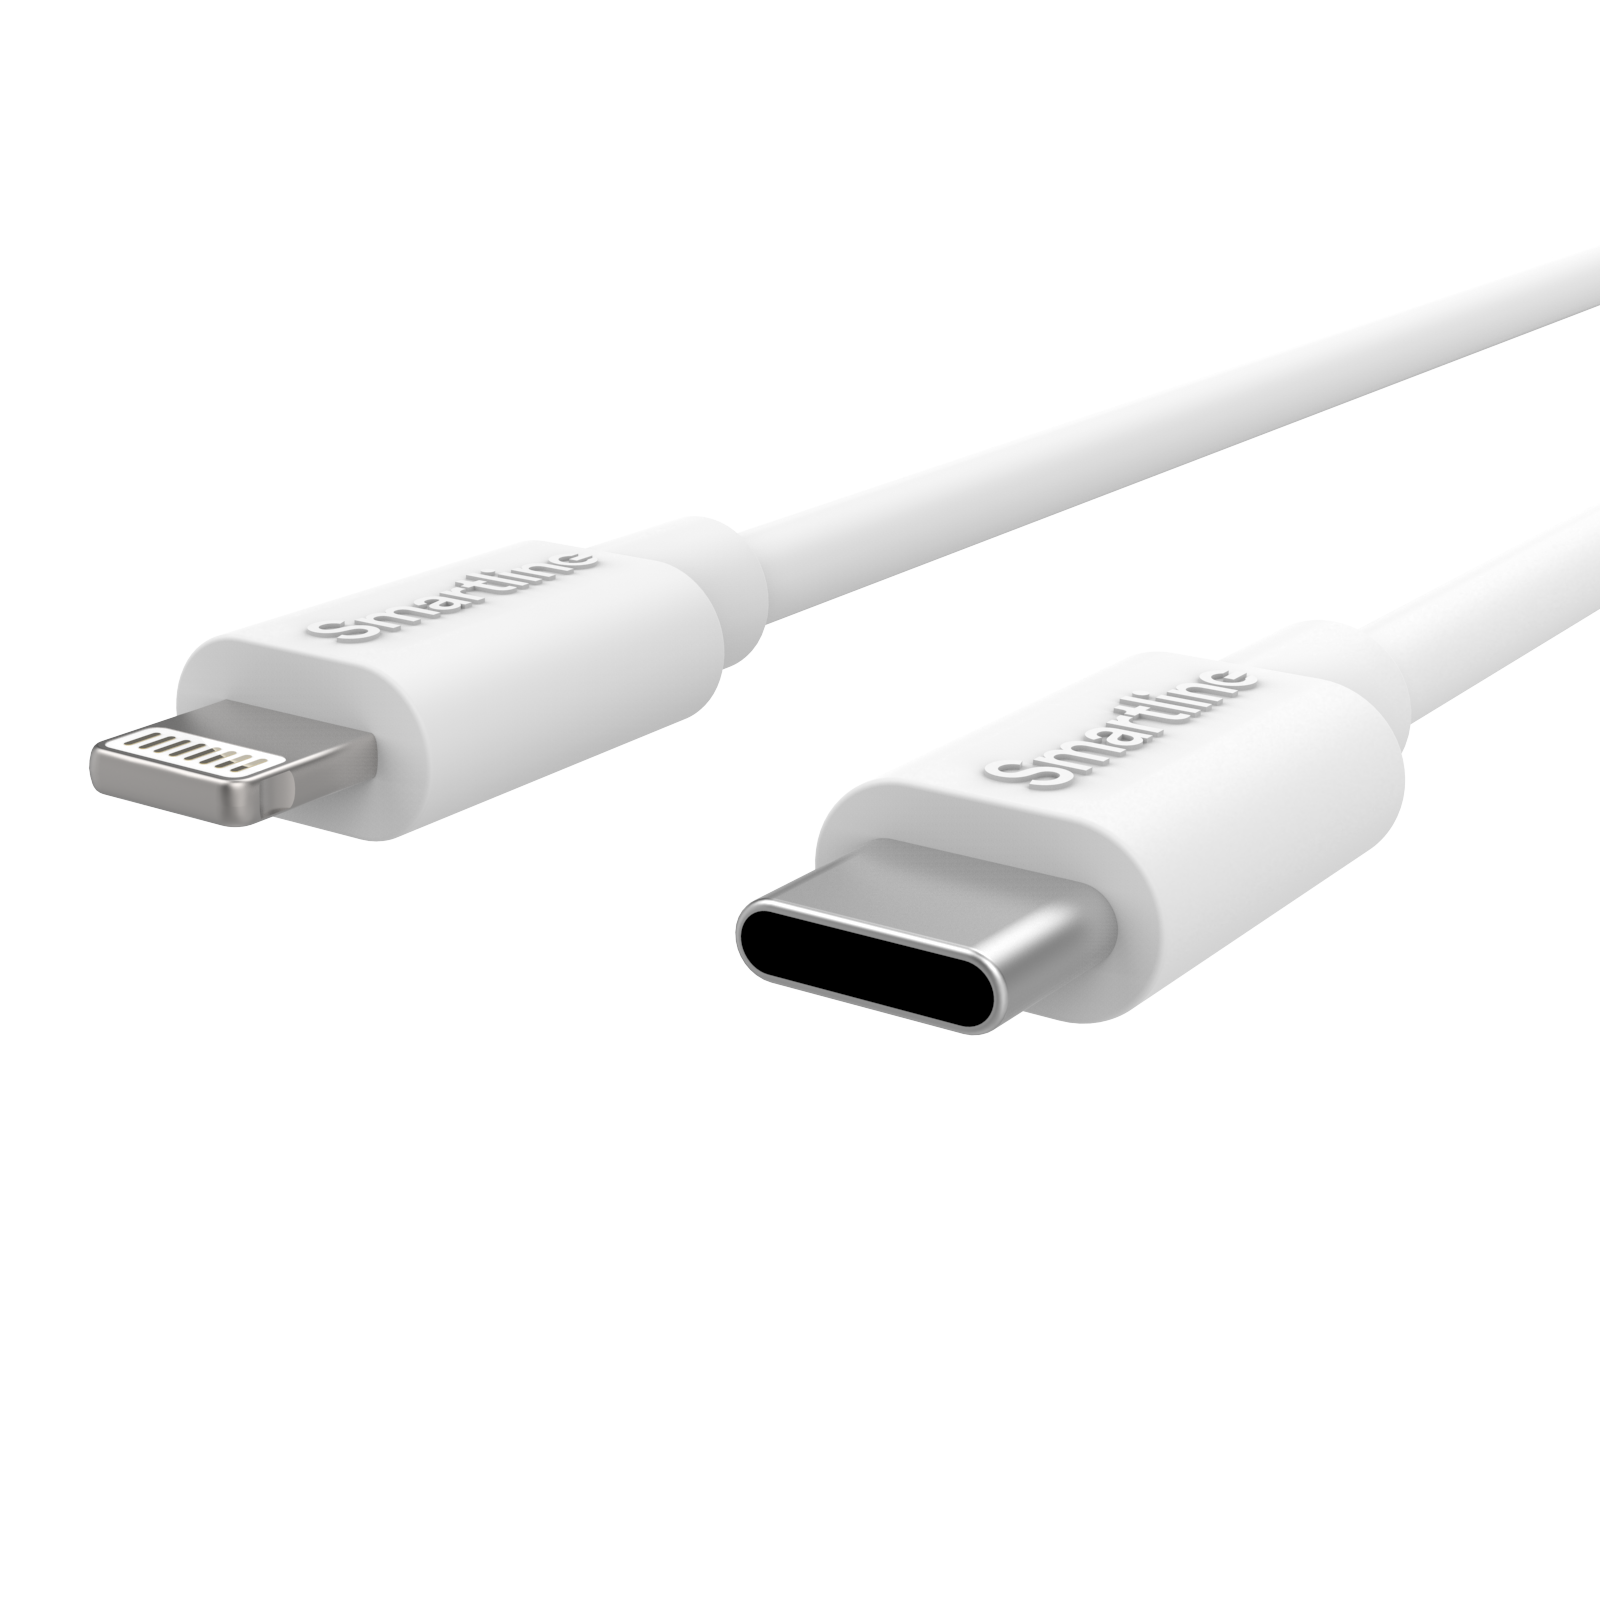 Cargador completo para iPhone SE (2020) - Cable de 2m y cargador de pared - Smartline